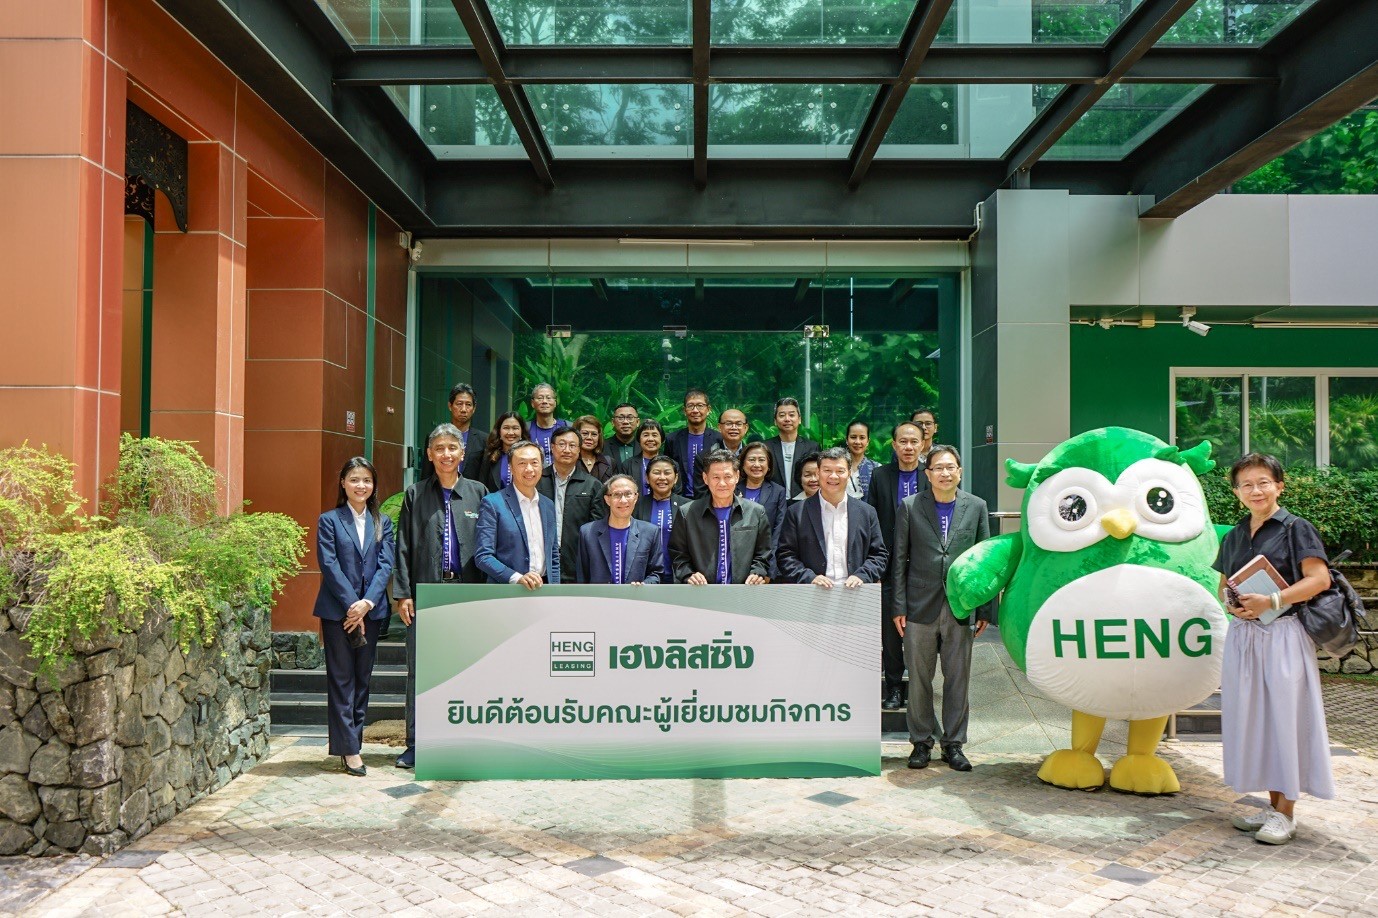 HENG เปิดบ้านต้อนรับคณะกรรมการสมาคมส่งเสริมผู้ลงทุนไทย และกรรมการชมรมอาสาพิทักษ์สิทธิผู้ถือหุ้น